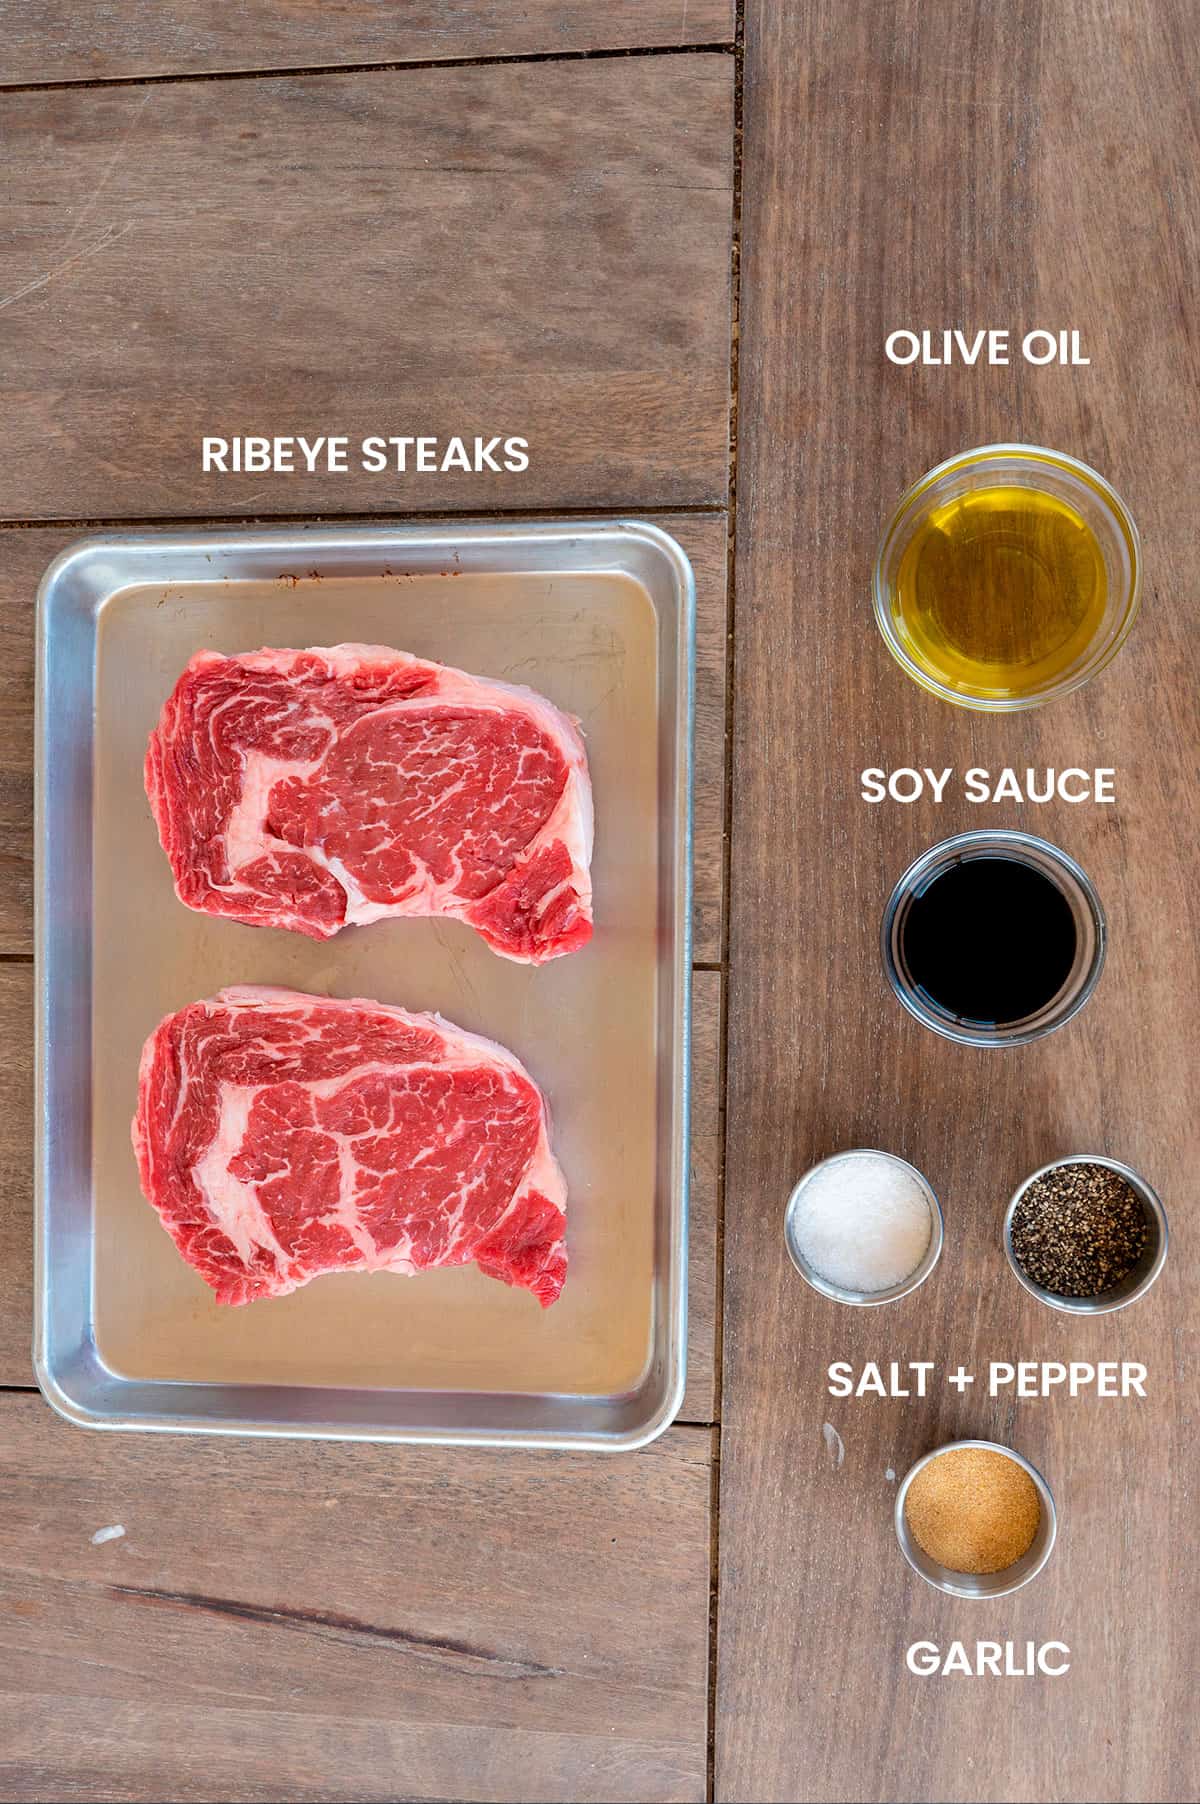 grilled ribeye steak ingredients: ribeye steaks, olive oil, soy sauce, salt, pepper and garlic.